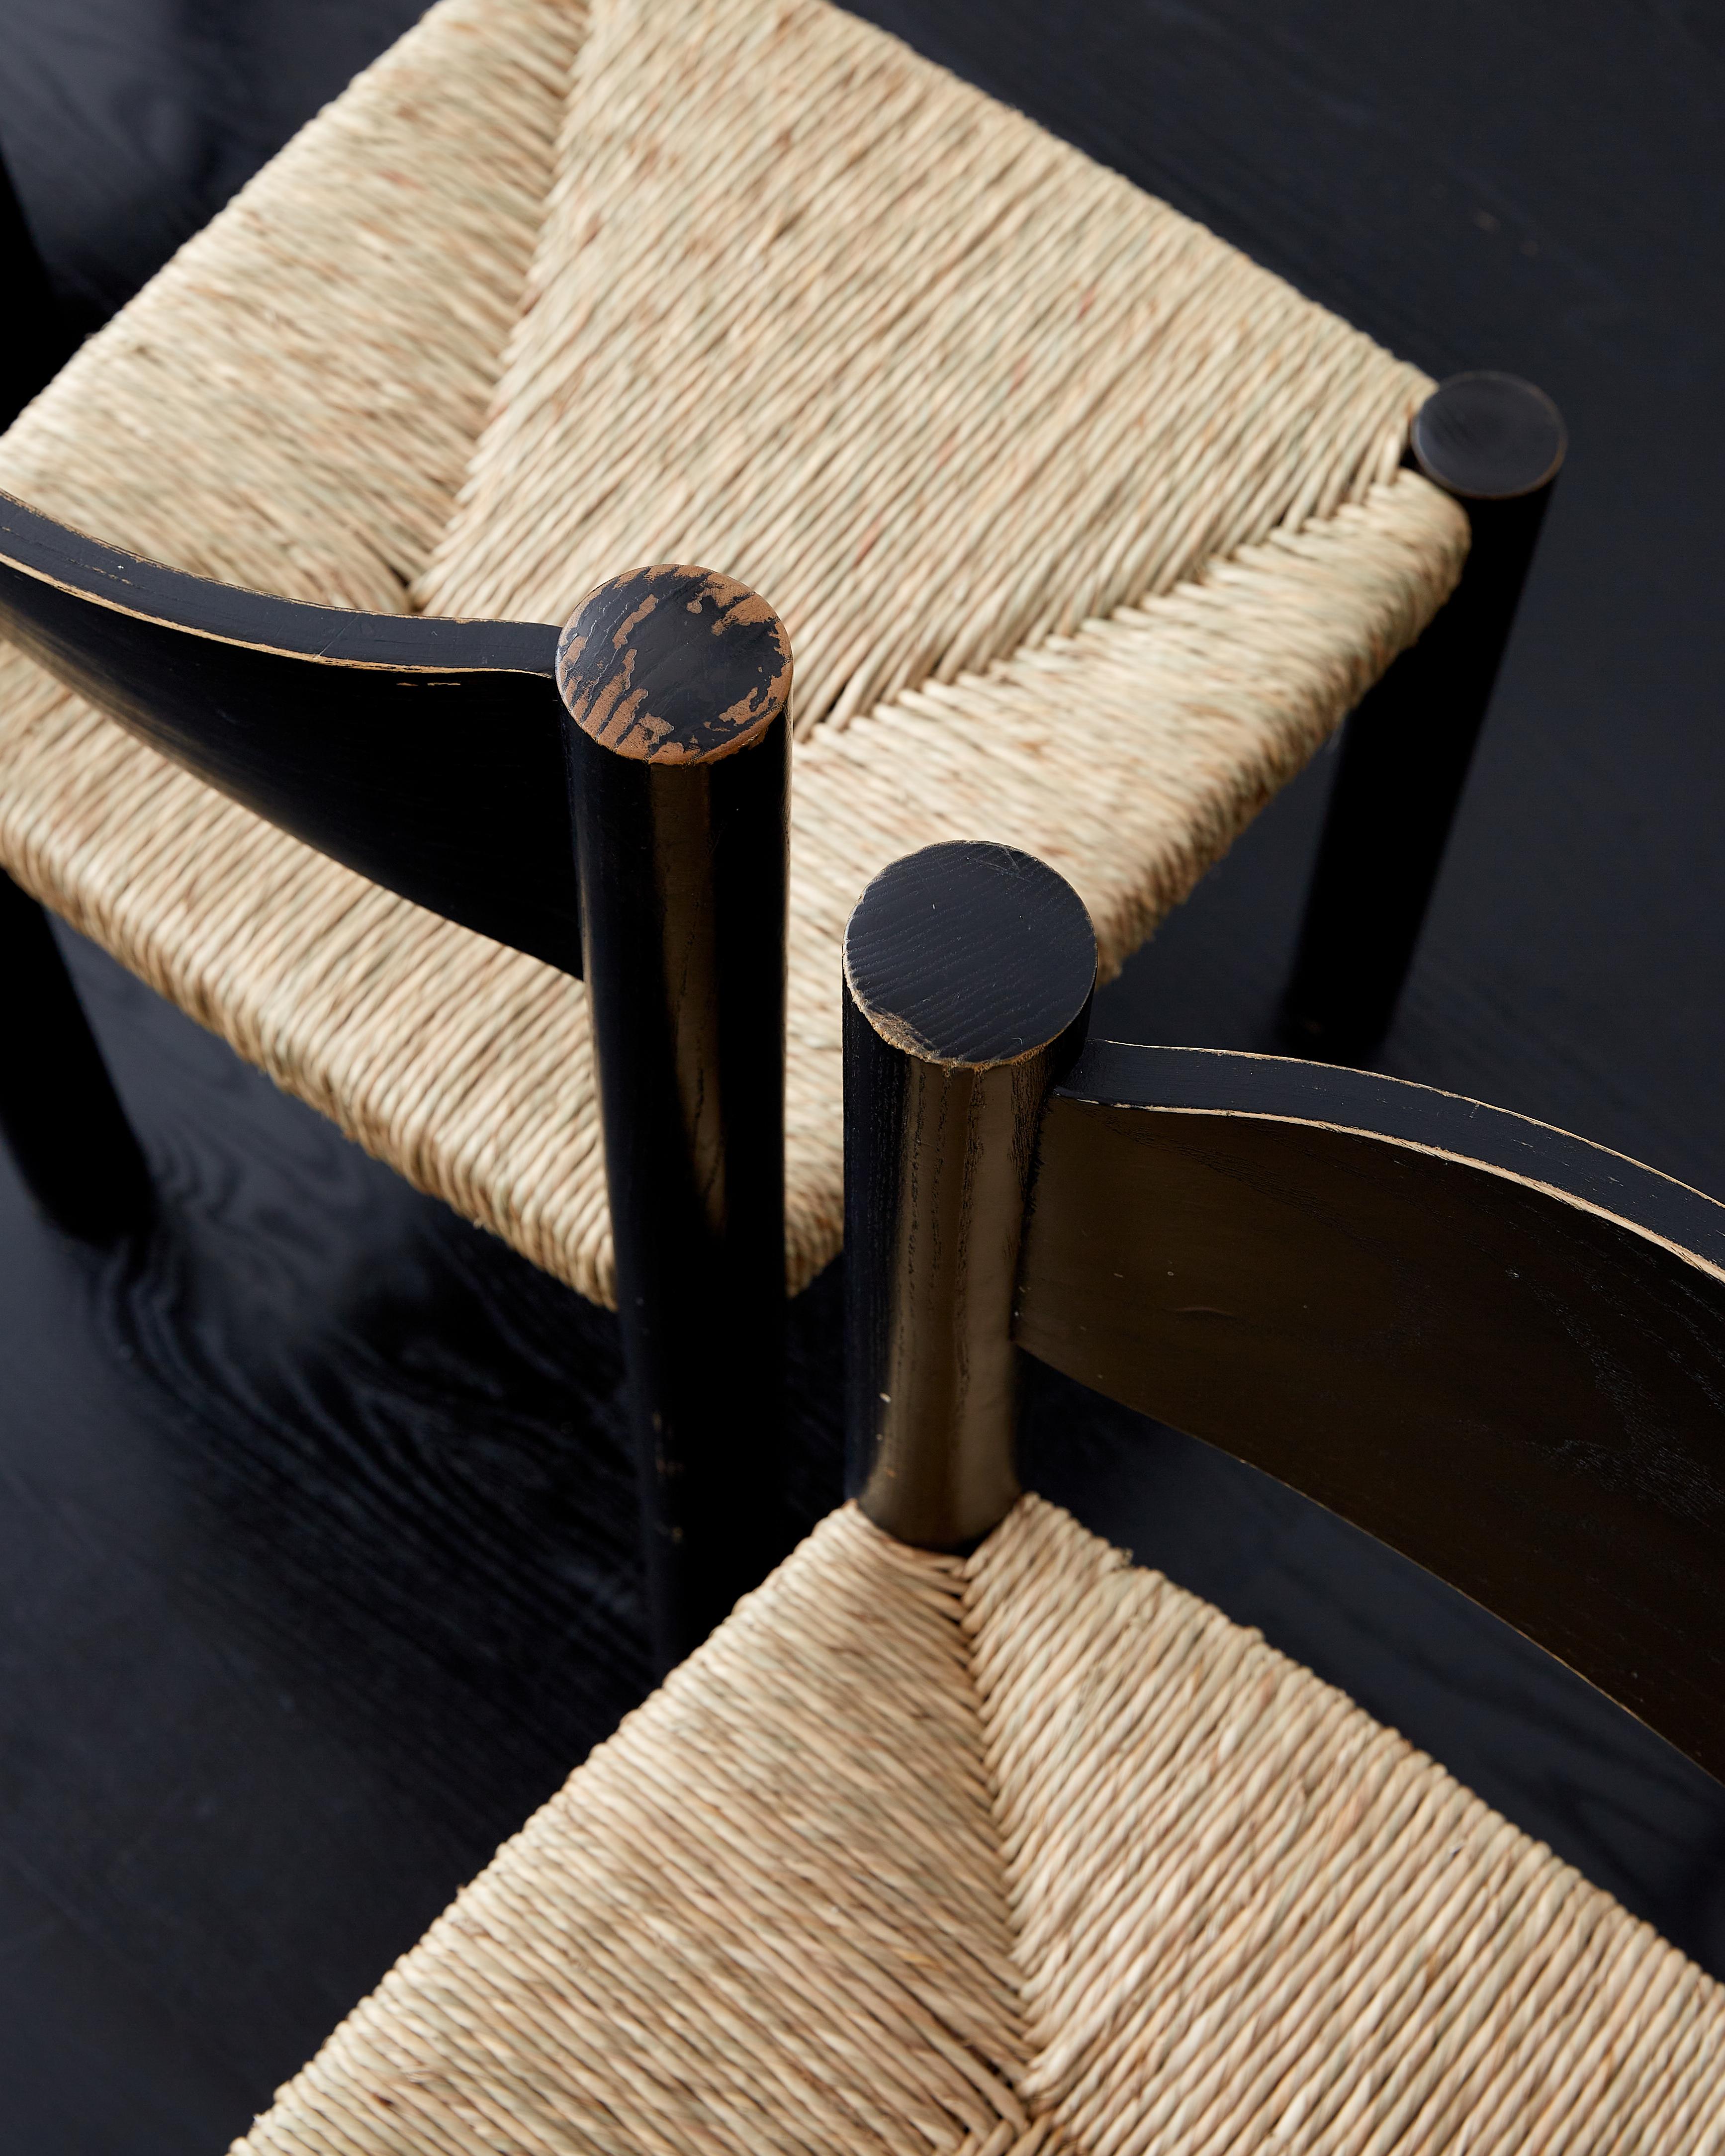 Satz von sechs schwarzen Charlotte Perriand Stühlen Meribel. 

Frankreich, ca. 1960er Jahre.

Die schwarze Farbe ist komplett original und hat eine schöne Patina (d.h. sie wurde nicht nachträglich lackiert, wie es bei vielen schwarzen